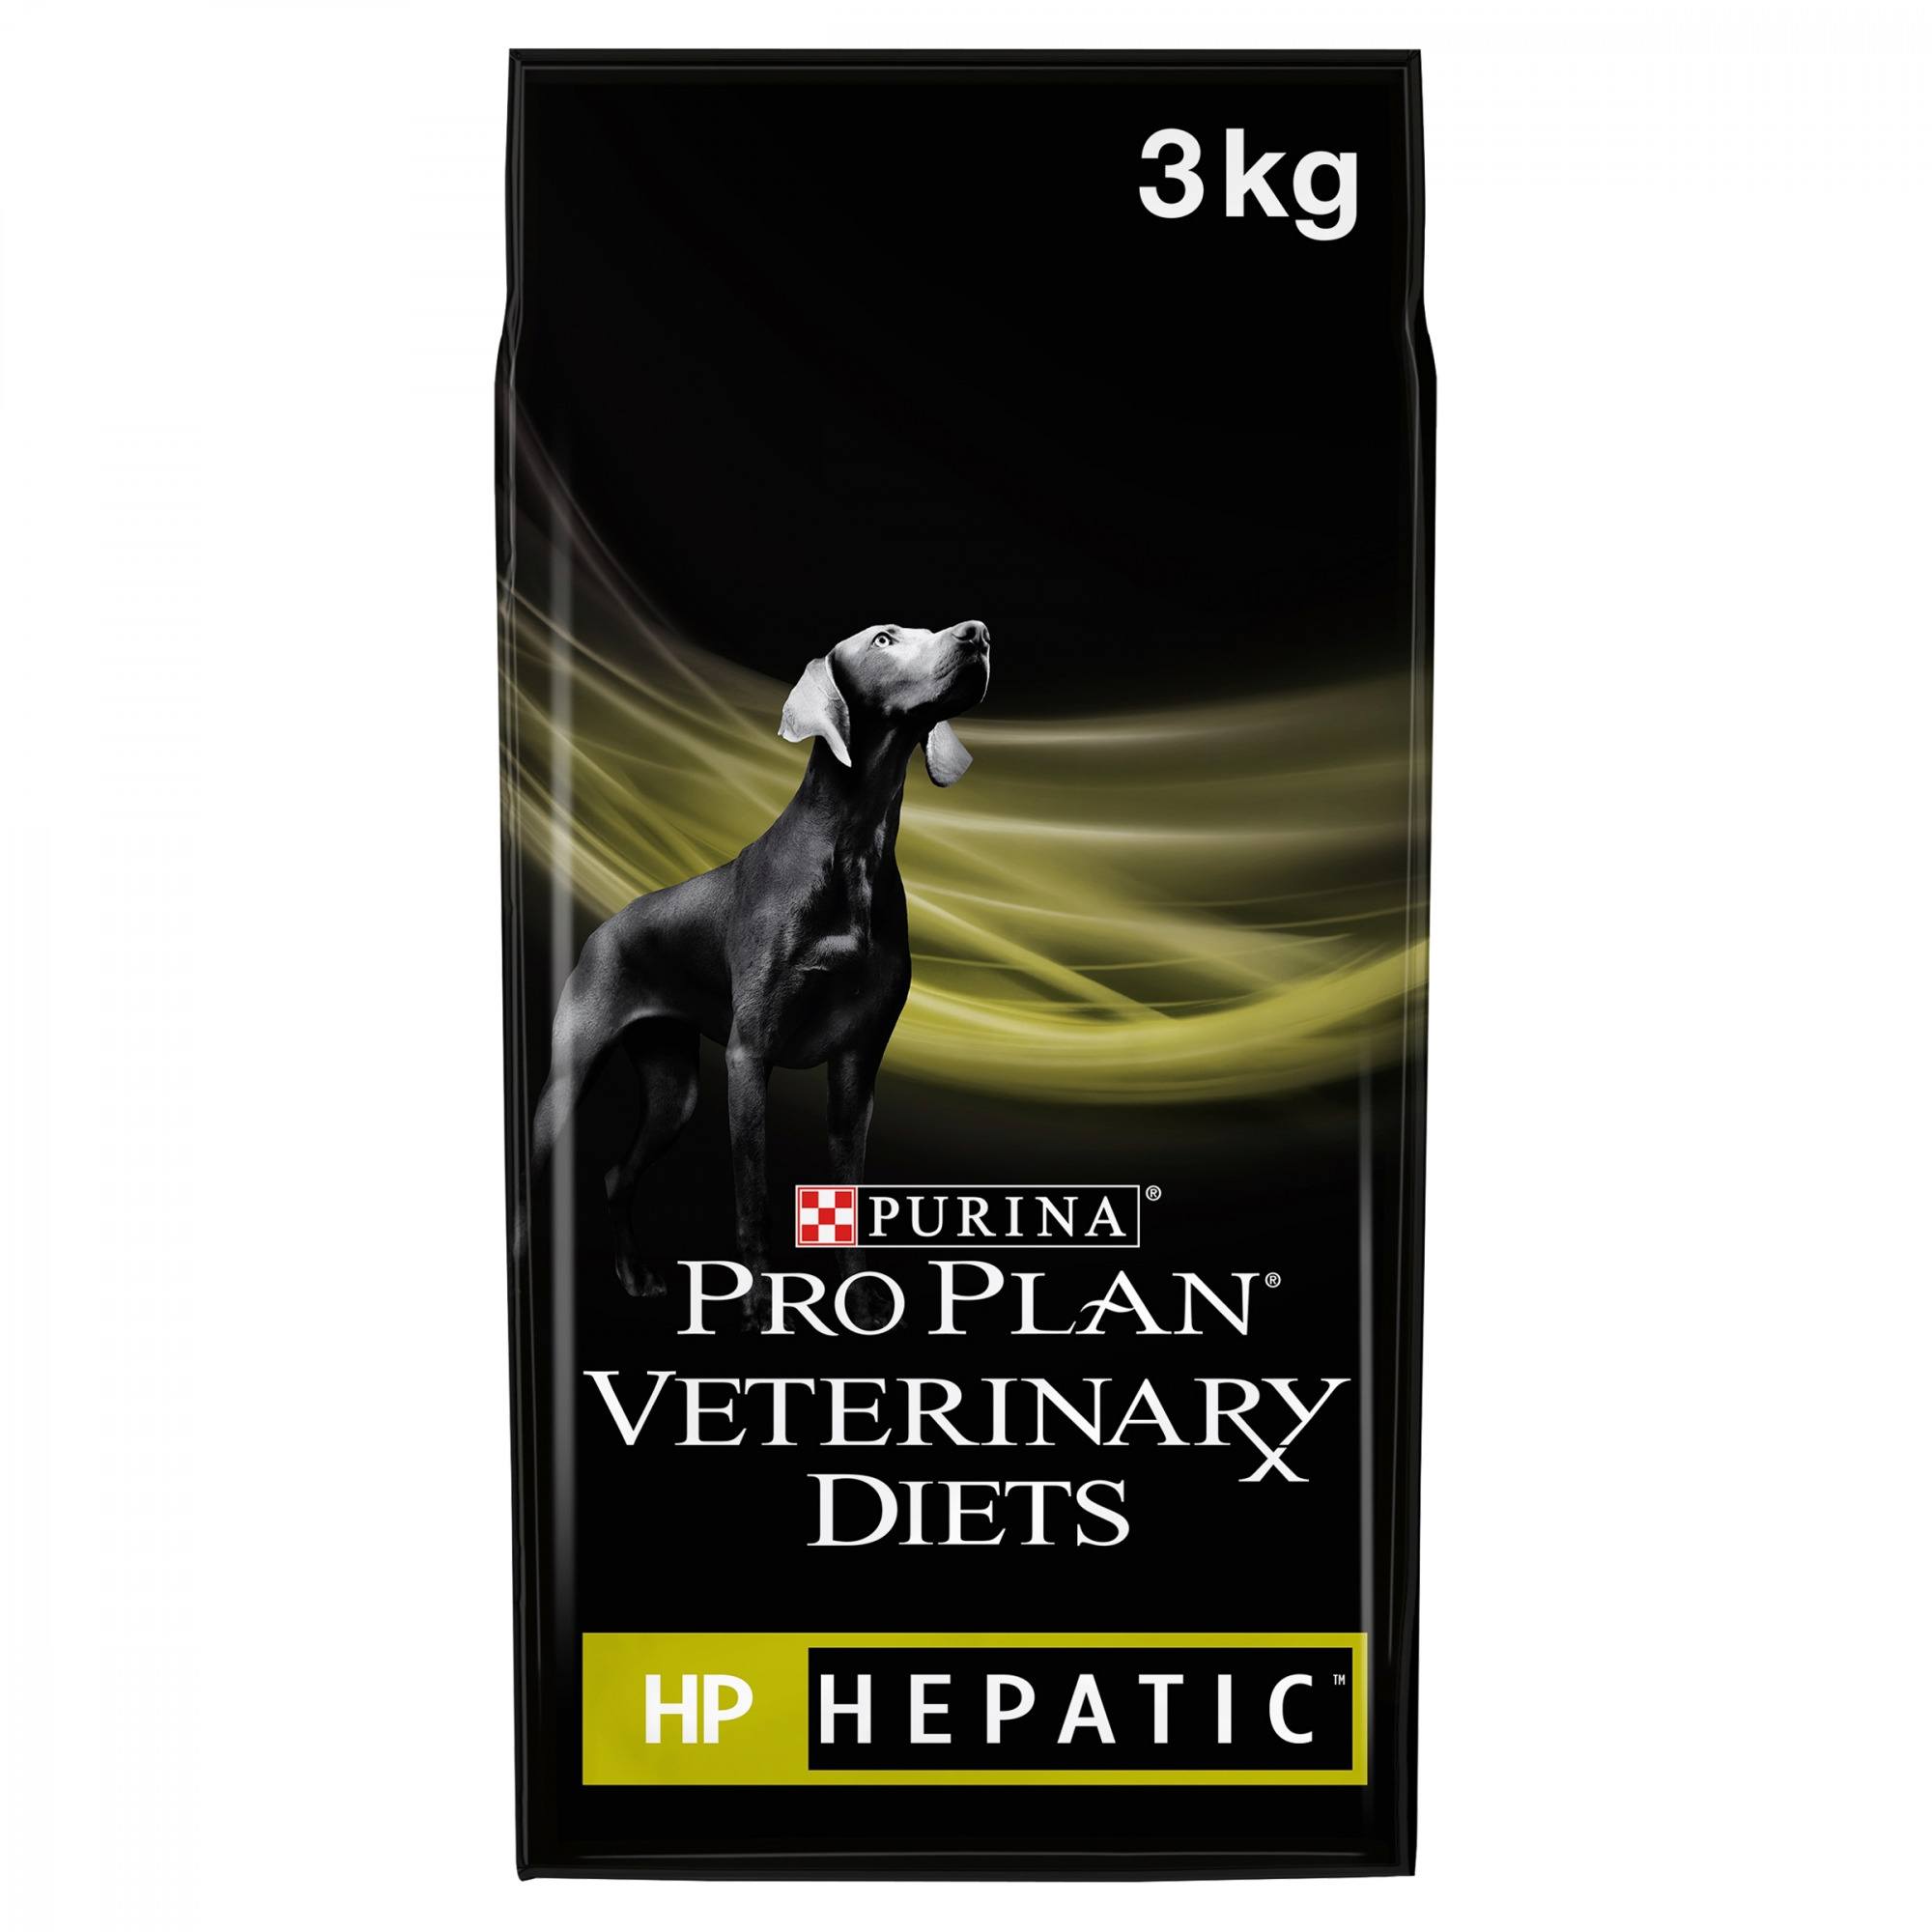 PRO PLAN VETERINARY DIETS HP Hepatic Dry Dog Food